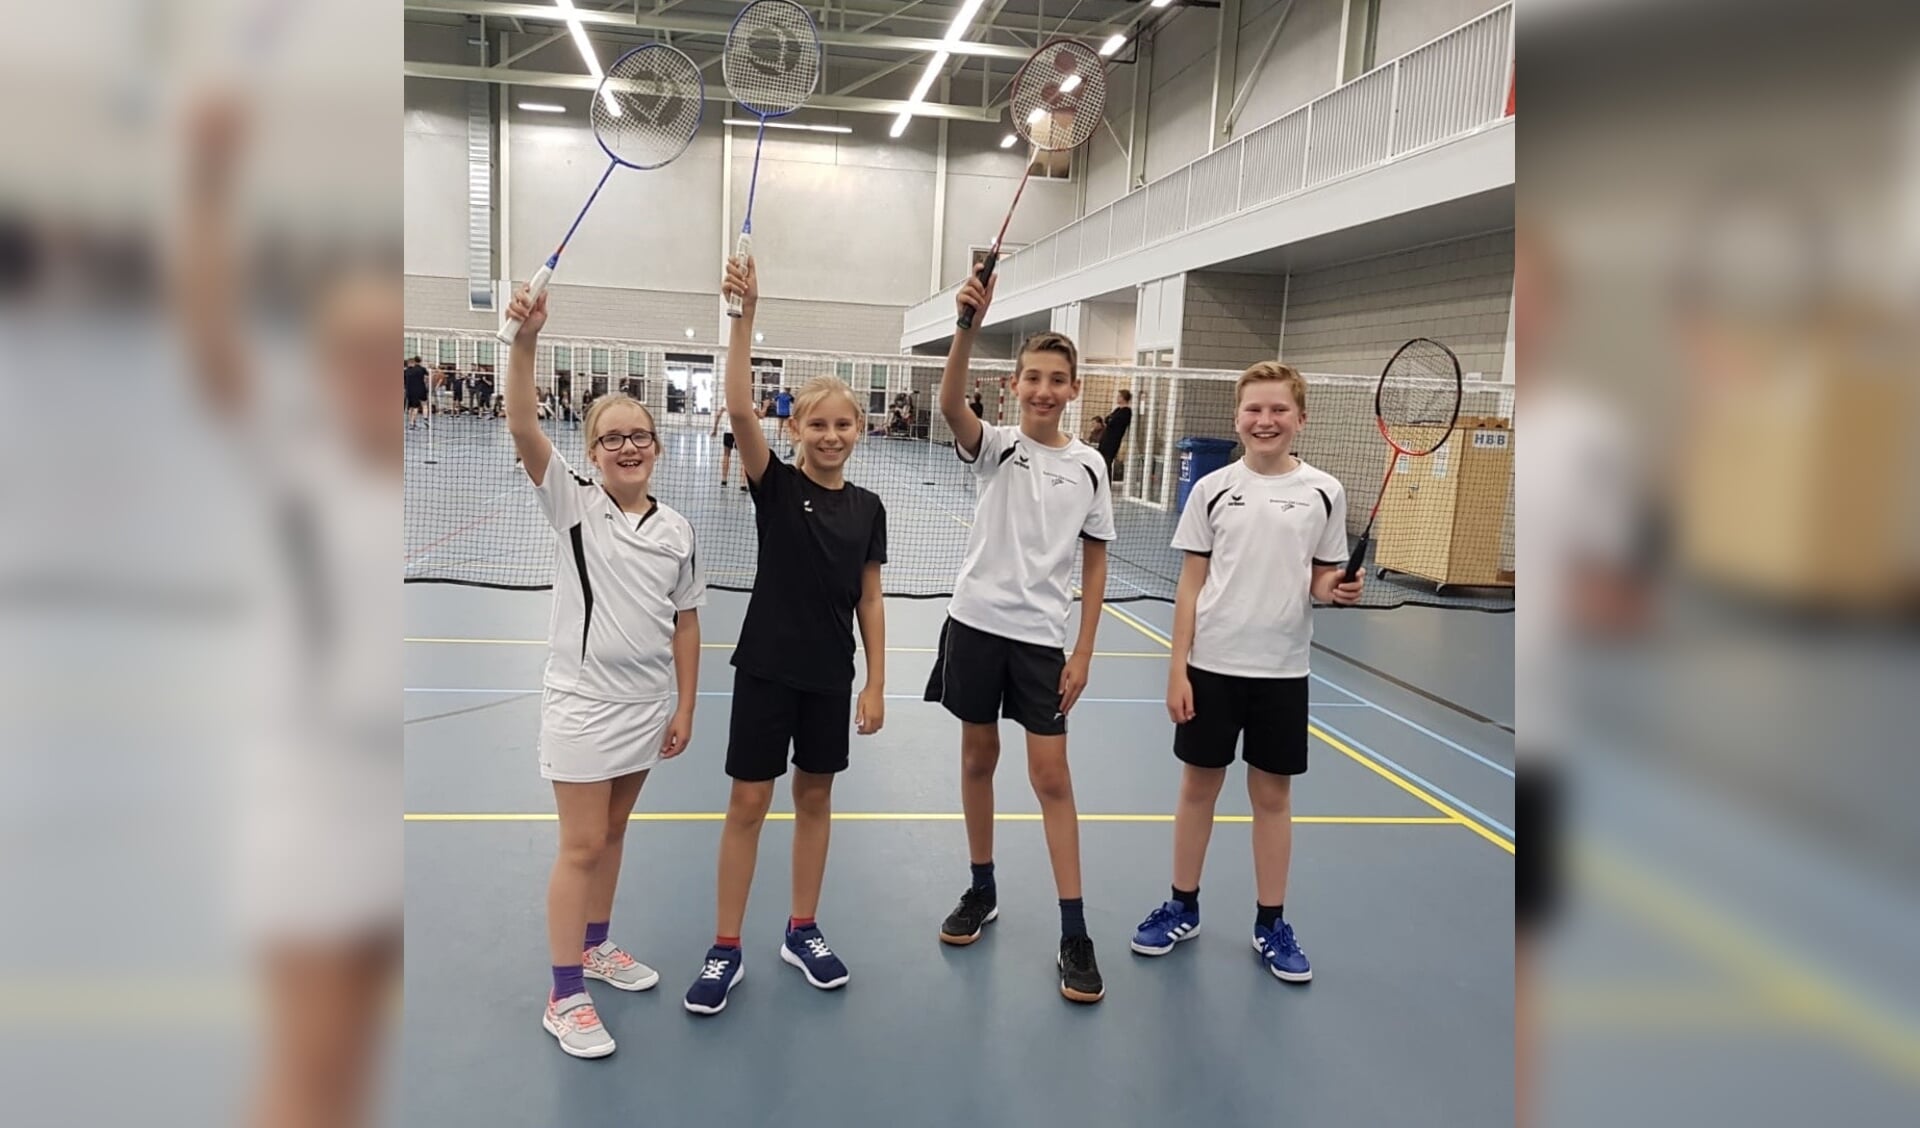 De leden van Badminton Club Lieshout kunnen tóch blijven sporten